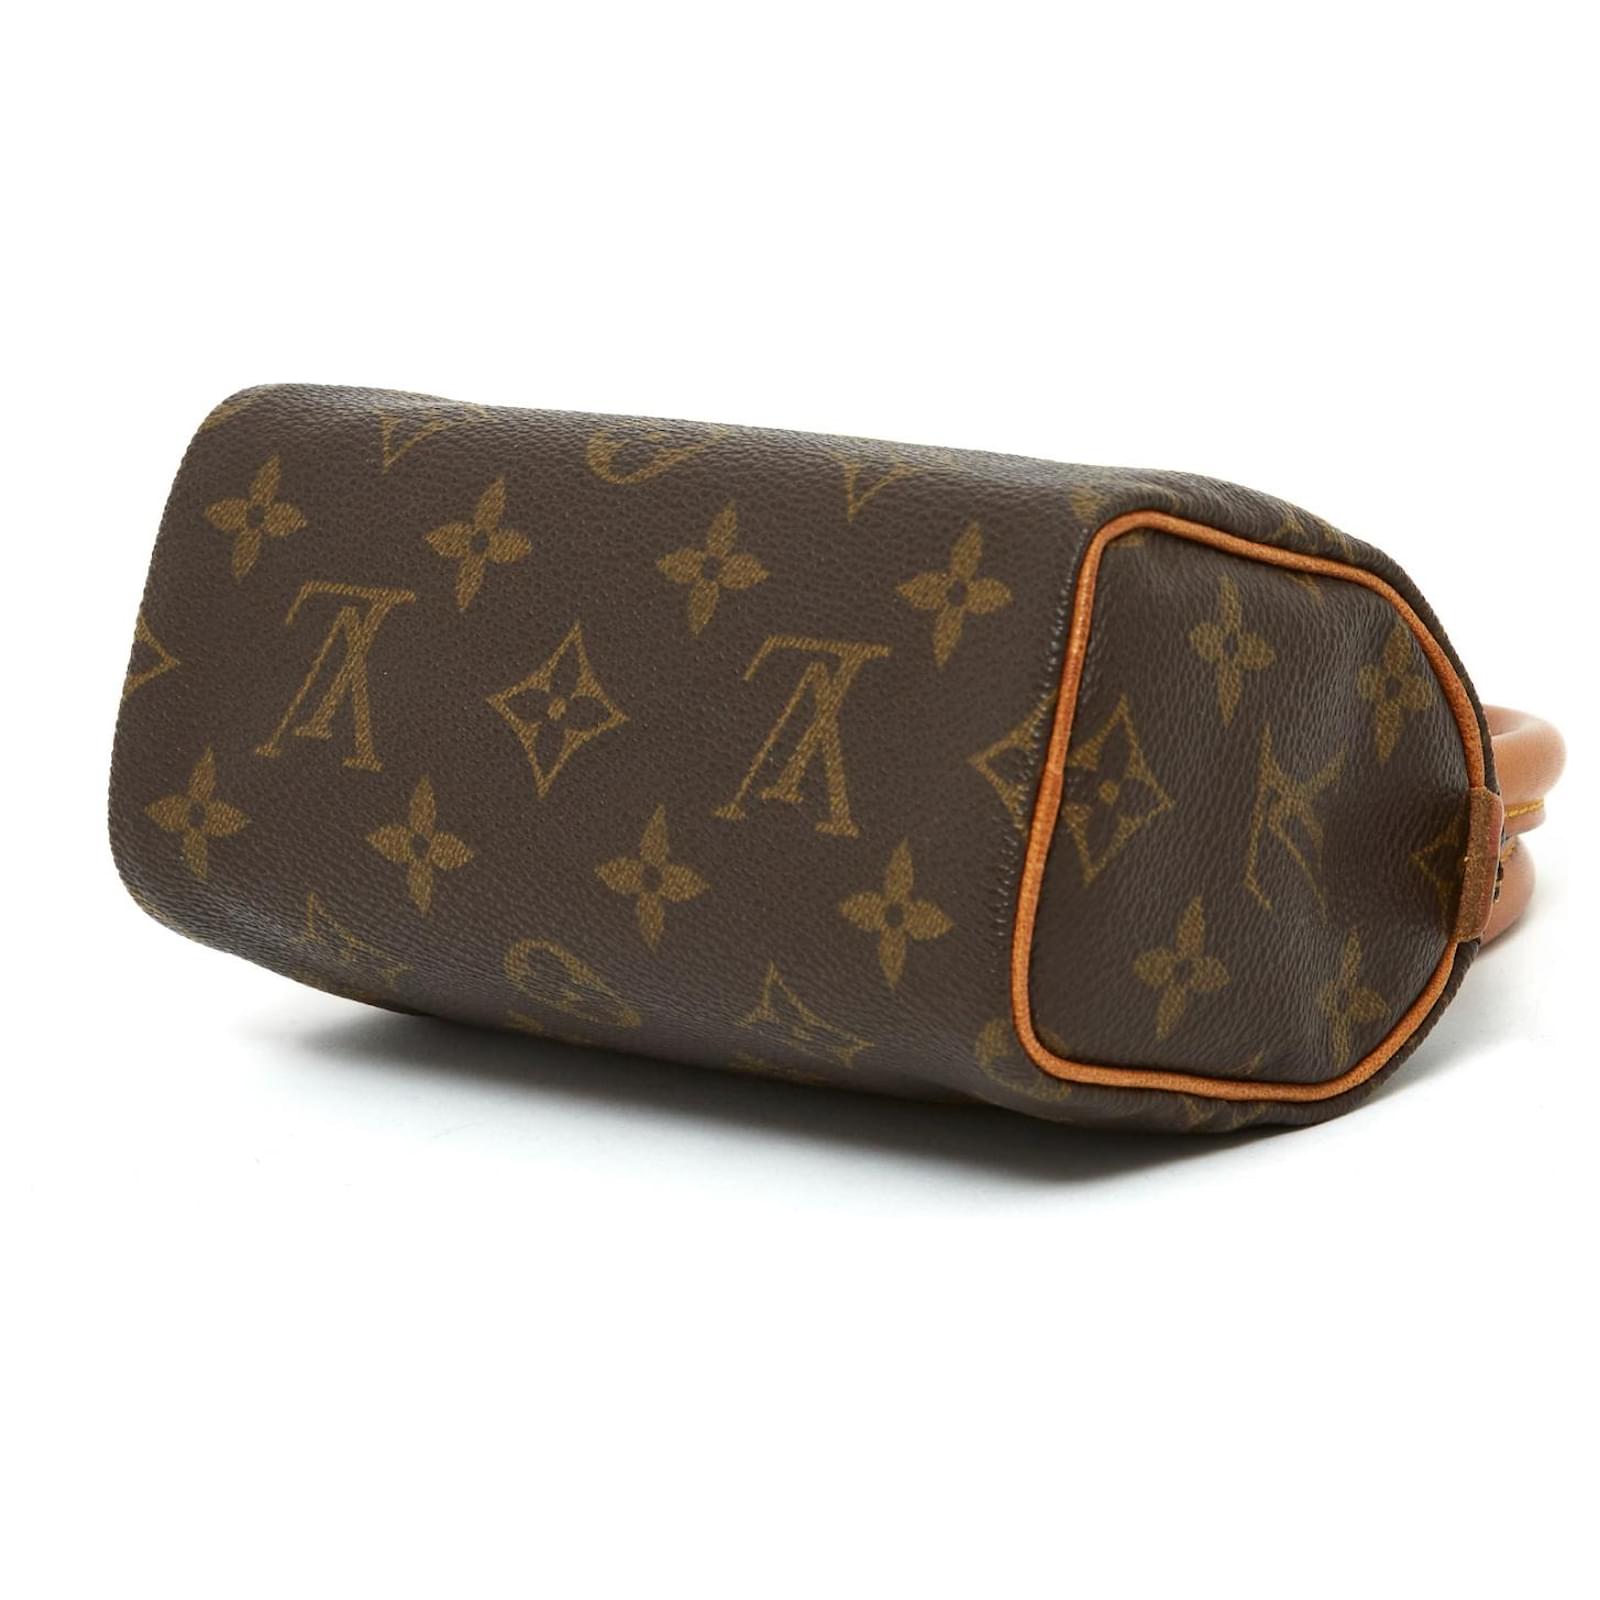 Nano speedy / mini hl cloth handbag Louis Vuitton Brown in Cloth